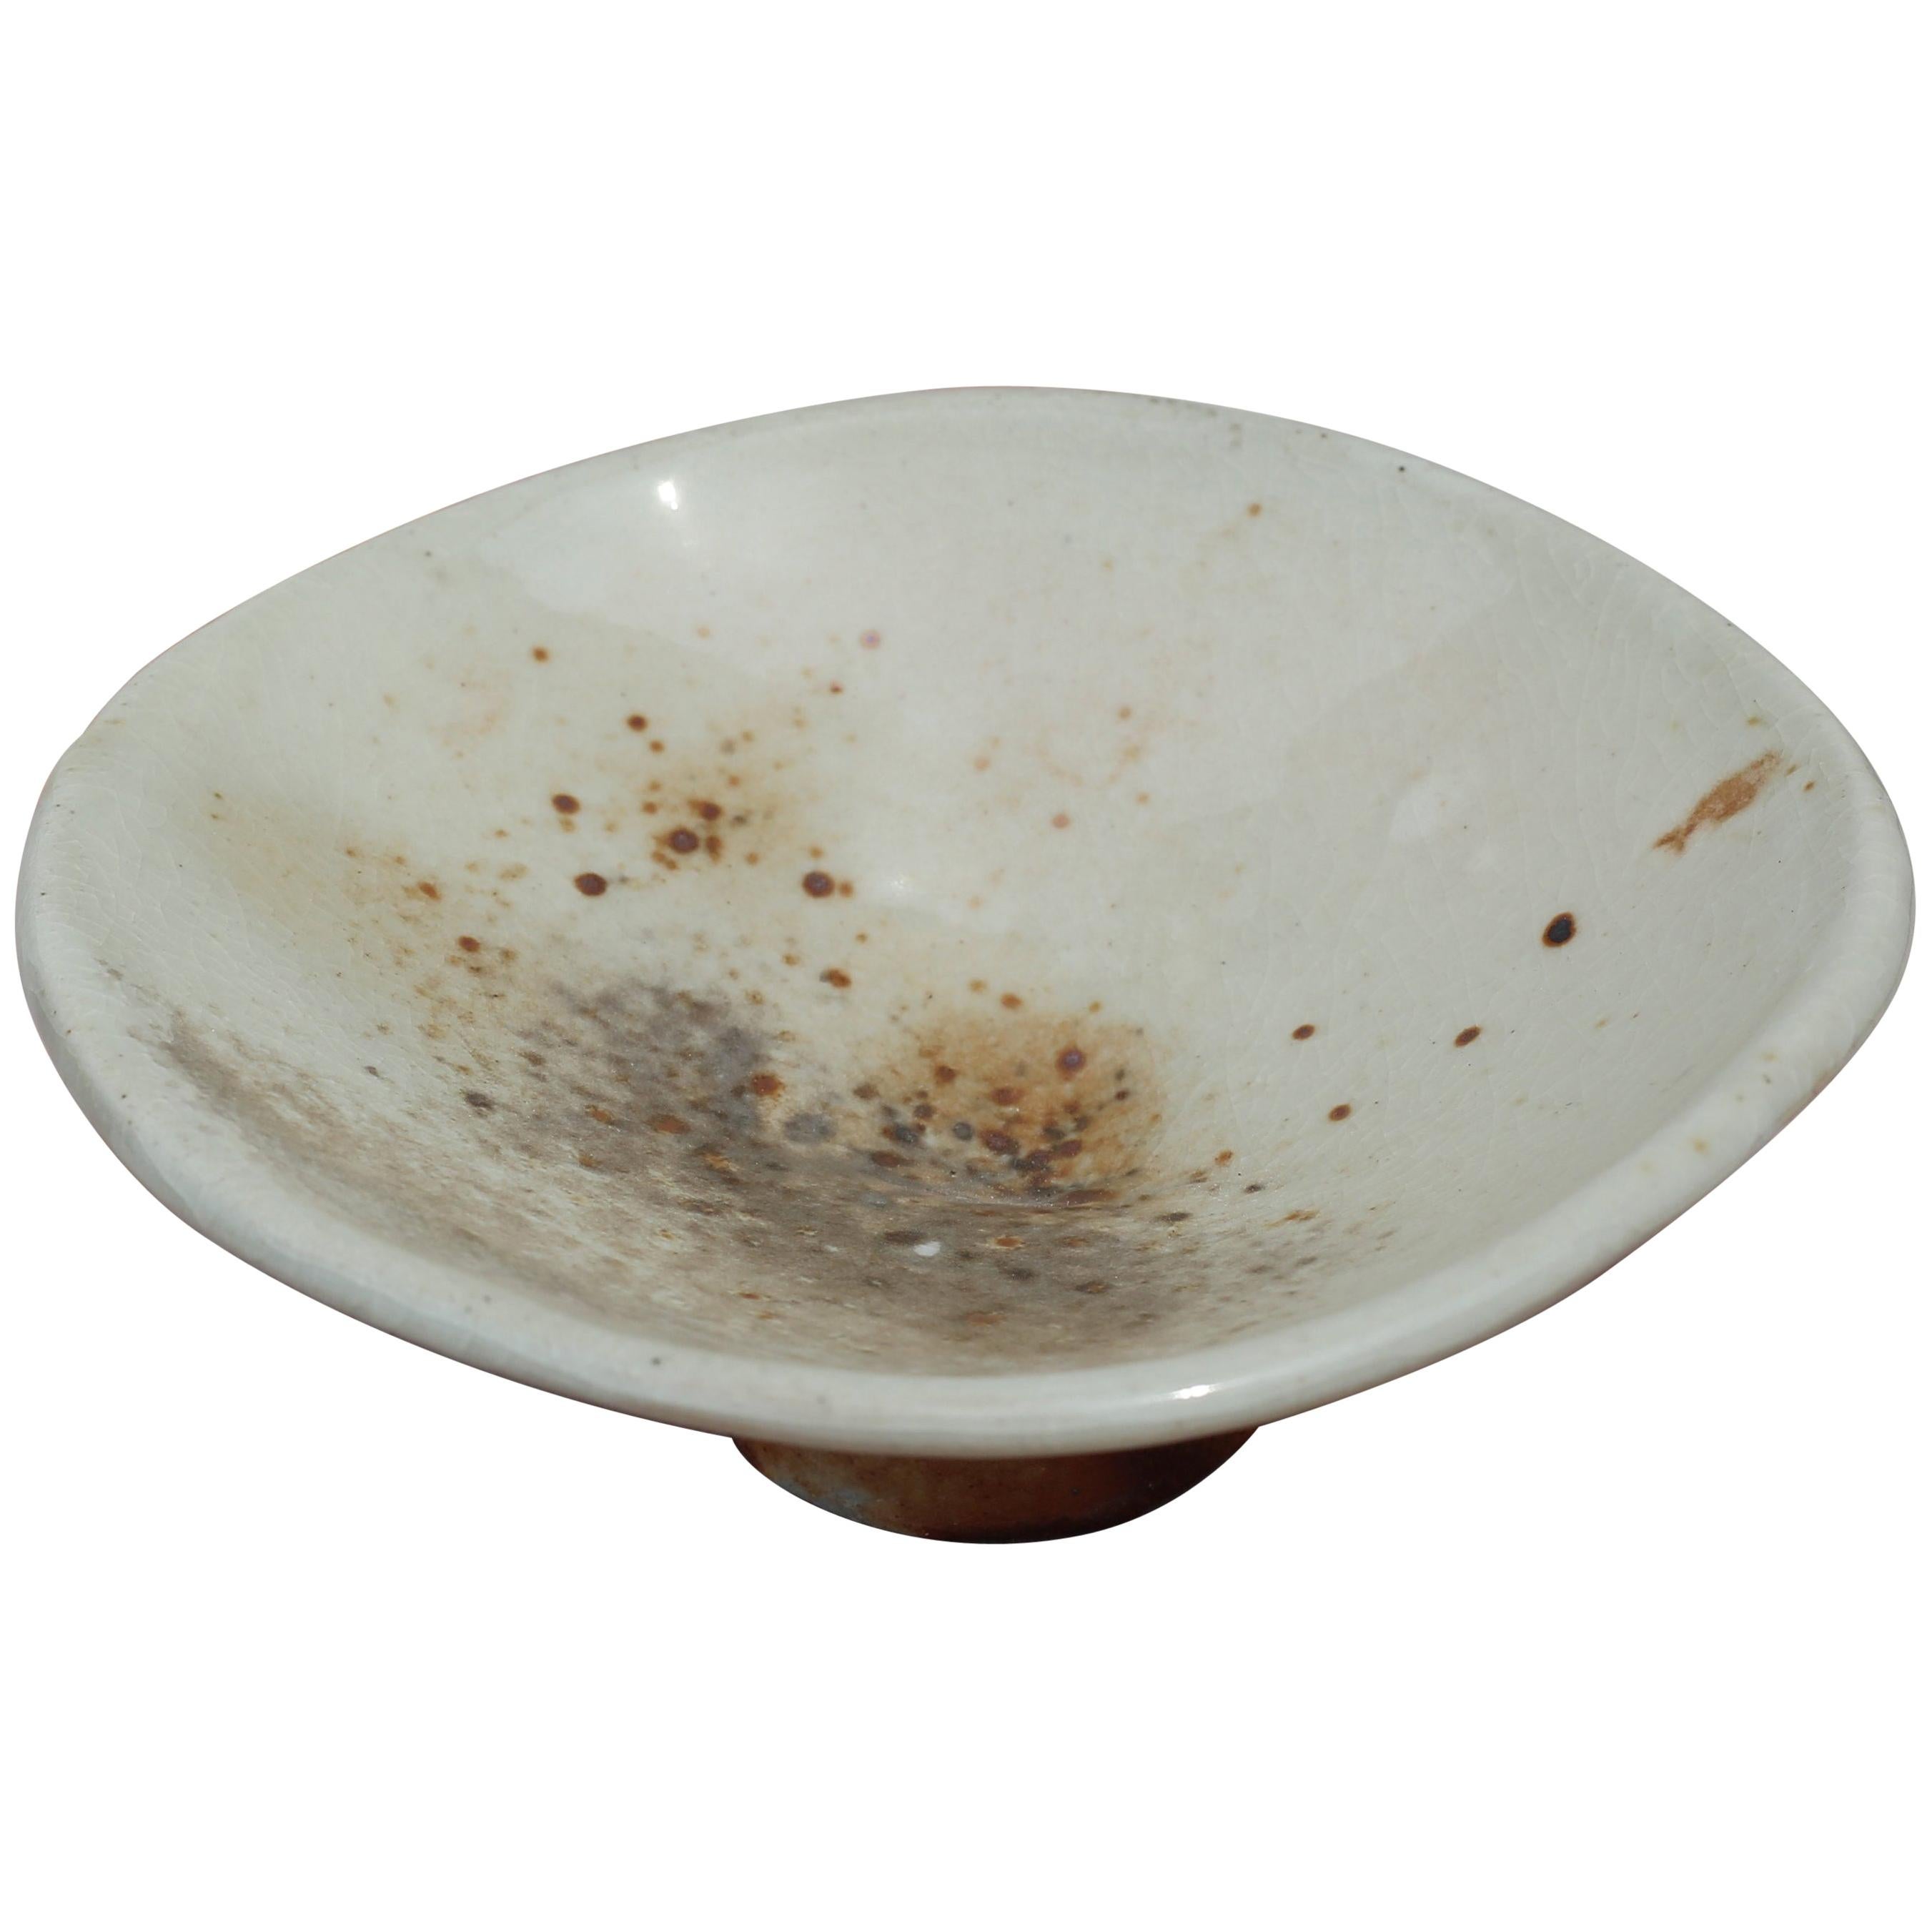 Decorative Pedestal Bowls, Hand-Built Wood-Fired Porcelain For Sale